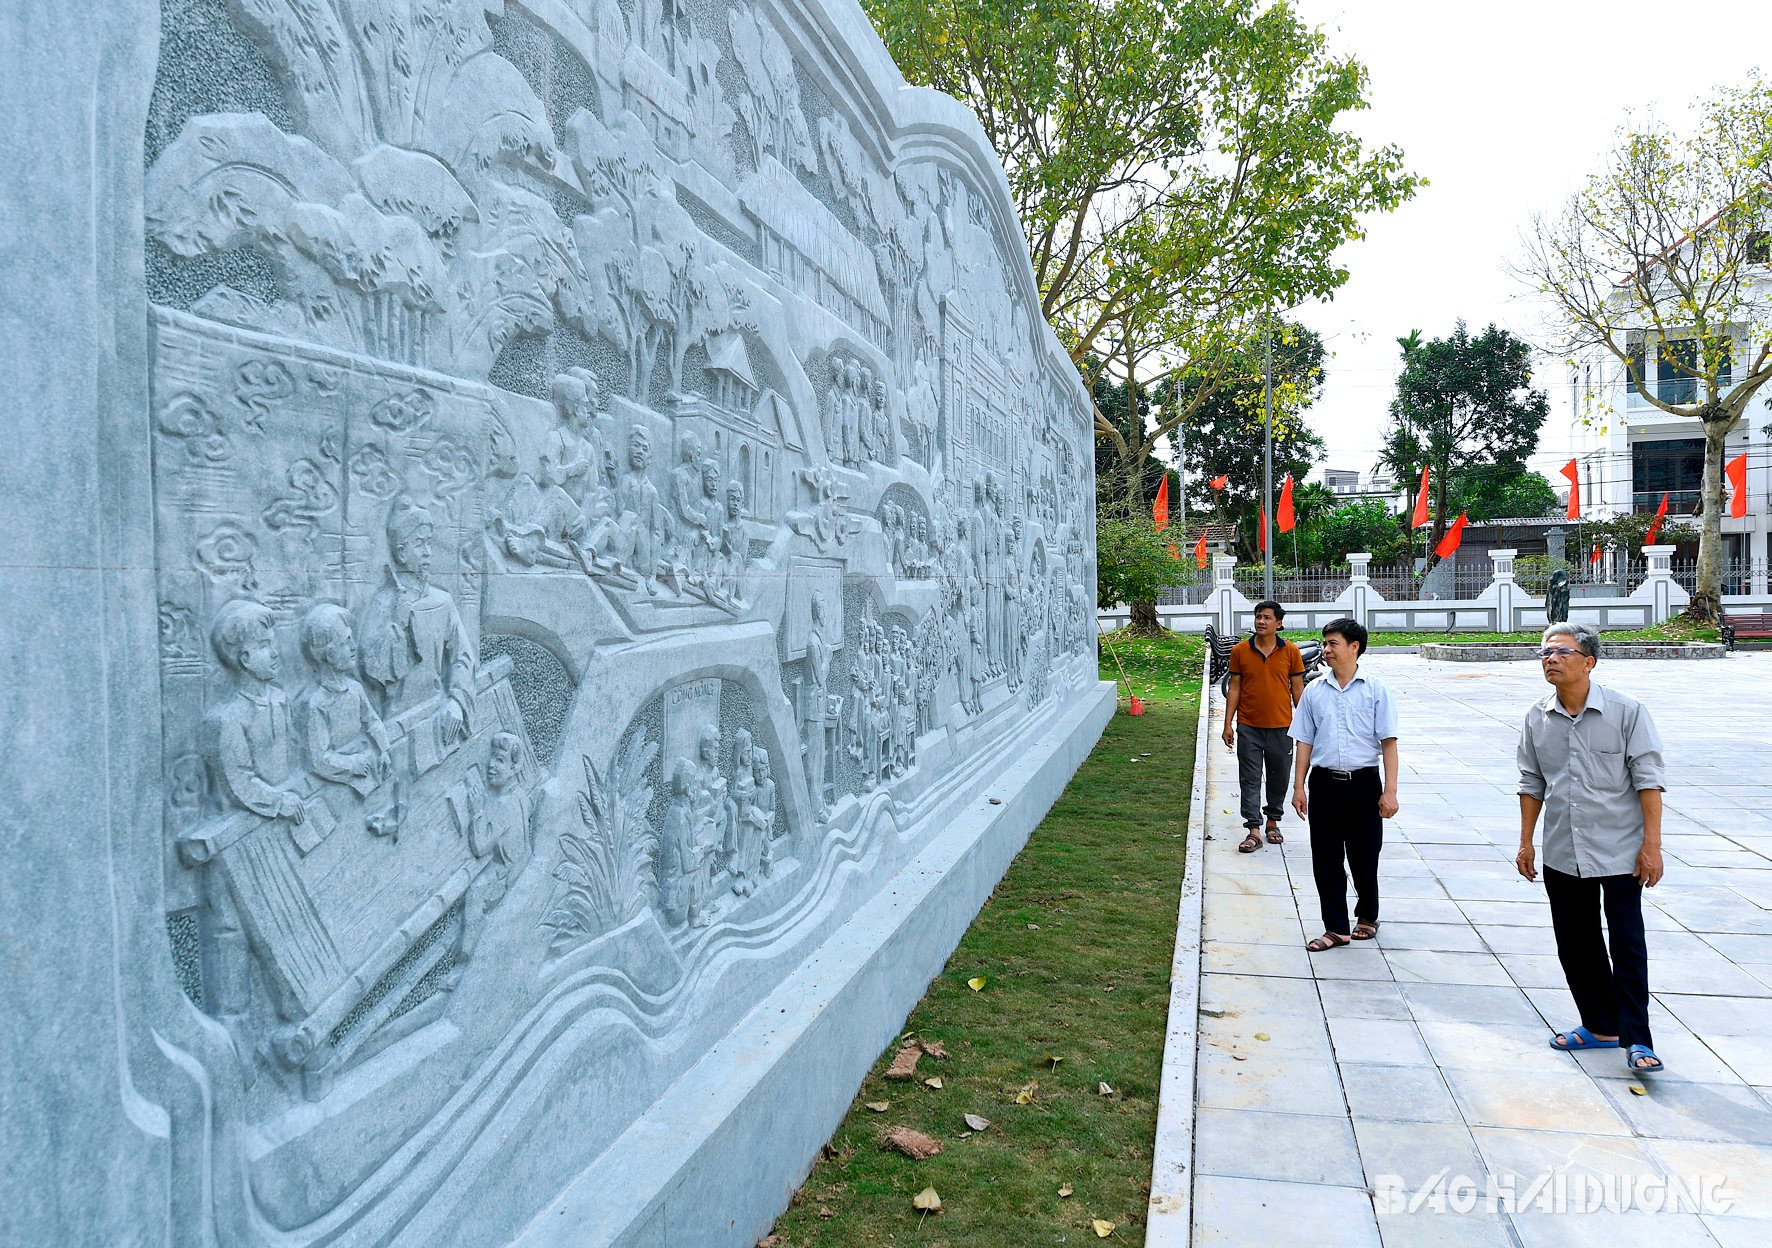 và bức phù điêu lớn điêu khắc trên đá về thân thế, sự nghiệp của cố Phó Chủ tịch nước Nguyễn Lương Bằng, tổng kinh phí hơn 12 tỷ đồng bằng ngân sách Nhà nước và xã hội hóa